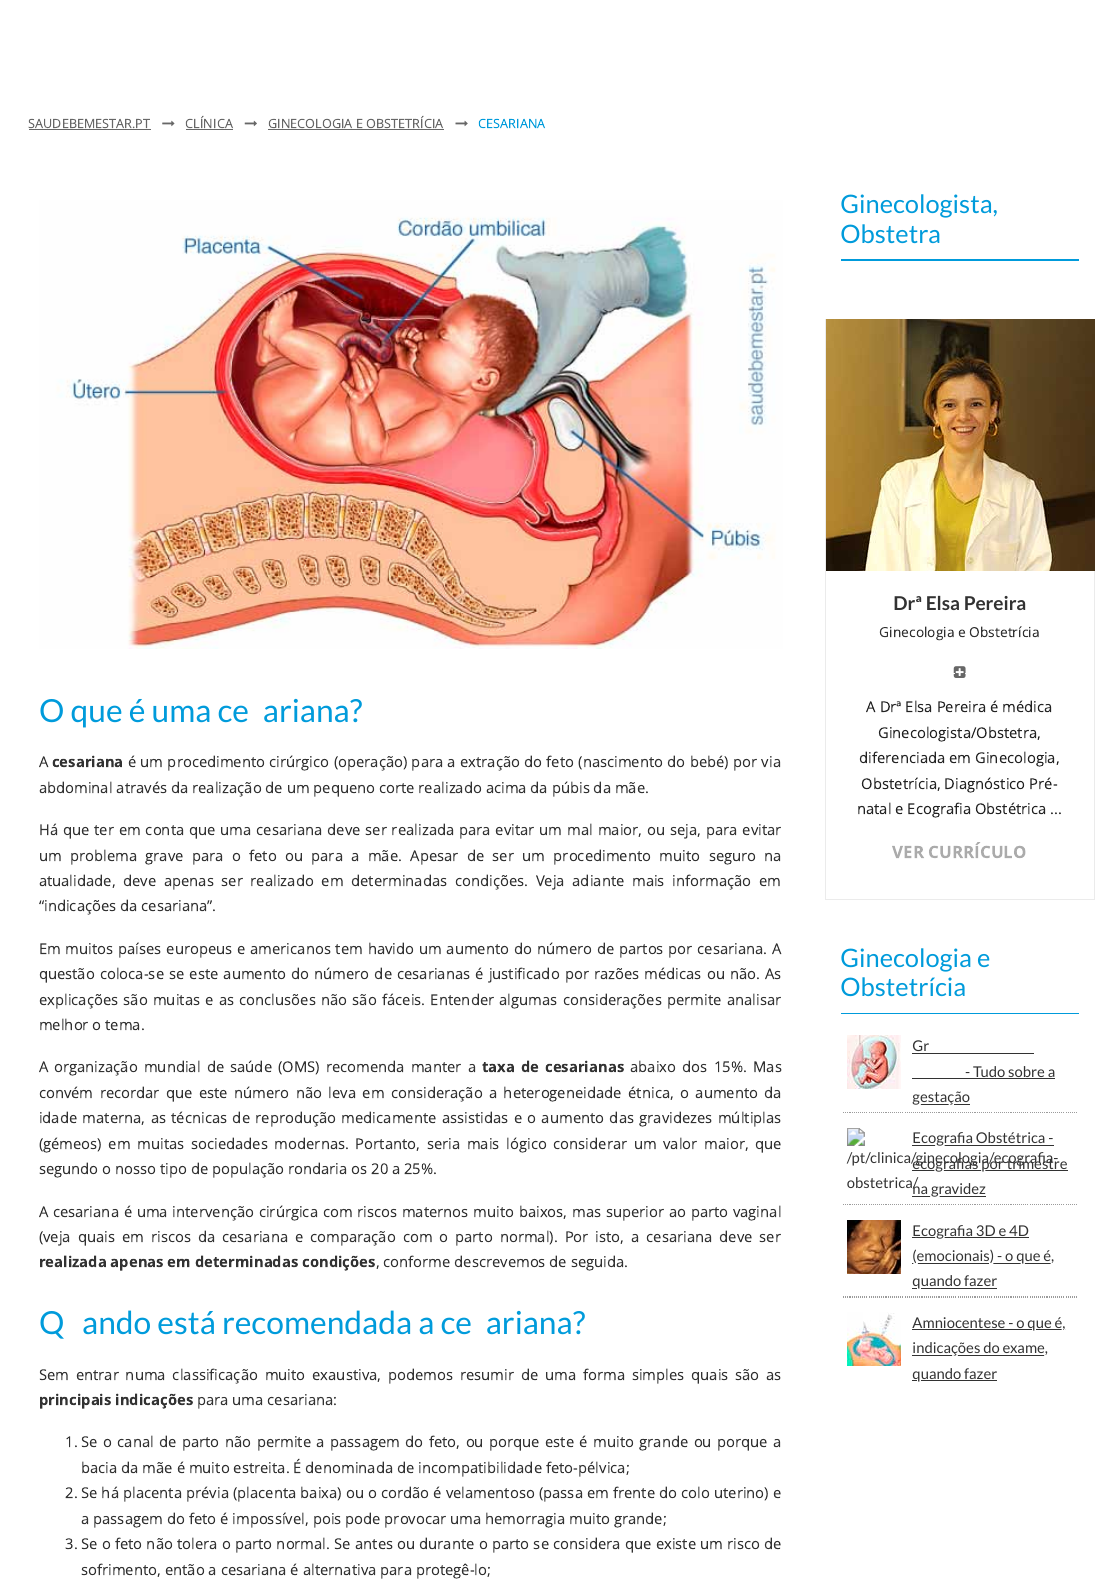 Cesariana - indicações, riscos, como é feita, recuperação após parto -  Ginecologia e Obstetrícia